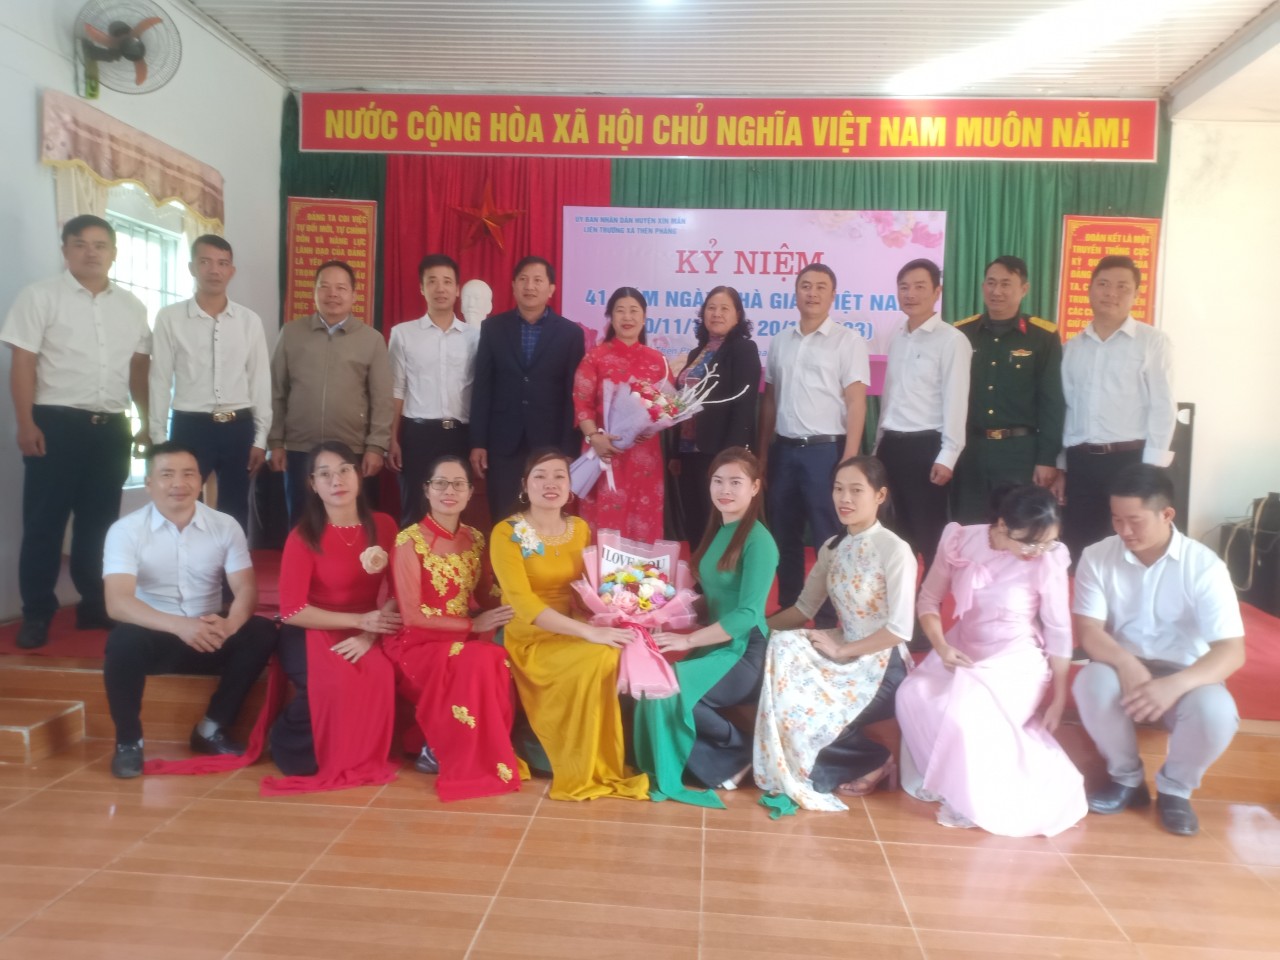 Tưng bừng kỷ niệm 41 năm ngày Nhà giáo Việt Nam